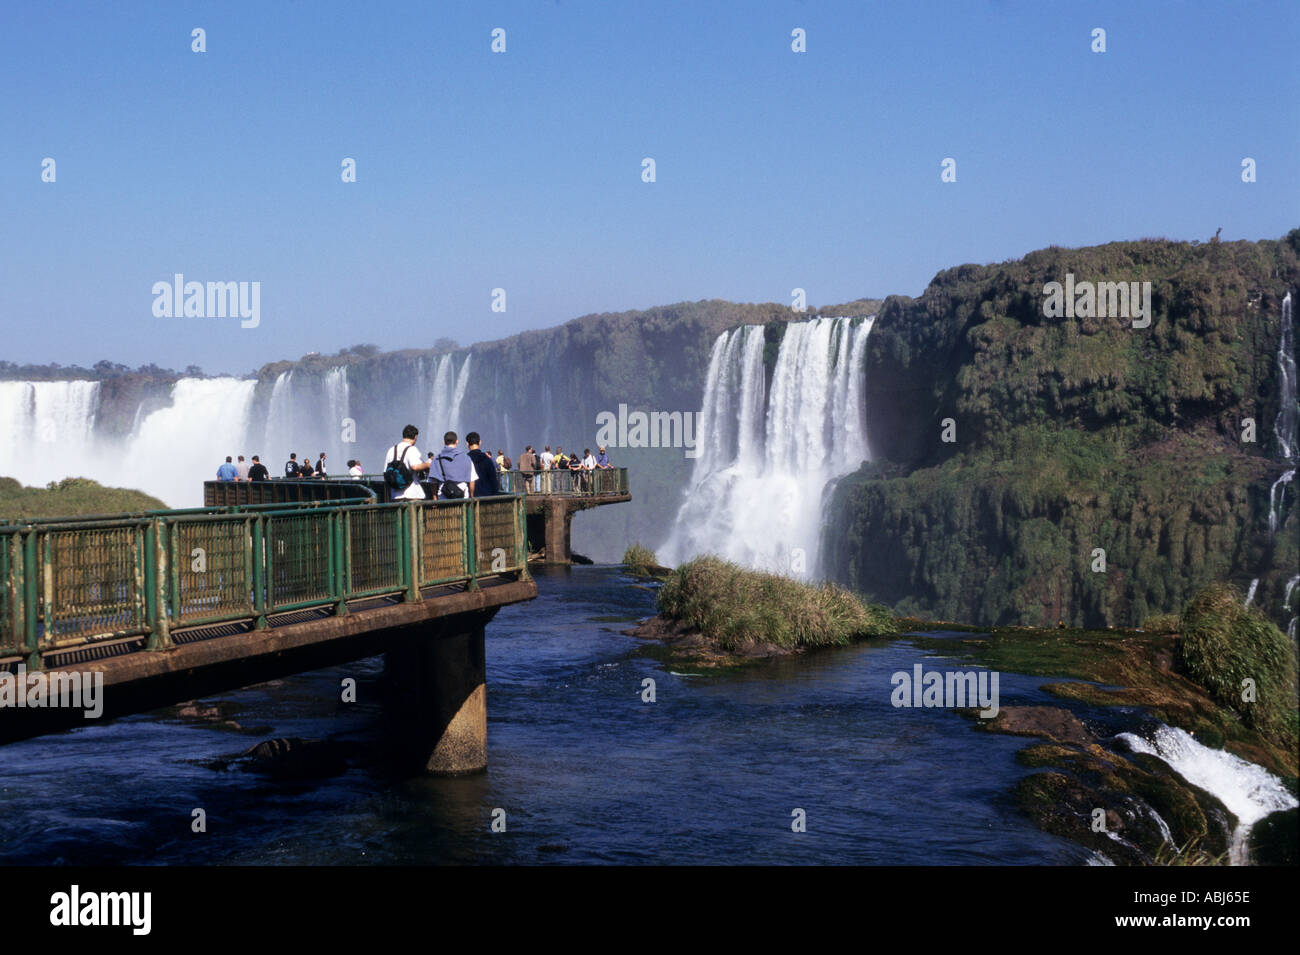 Iguassu Falls, Stato di Parana, Brasile. I turisti guardando le cascate dall'area di visualizzazione. Foto Stock